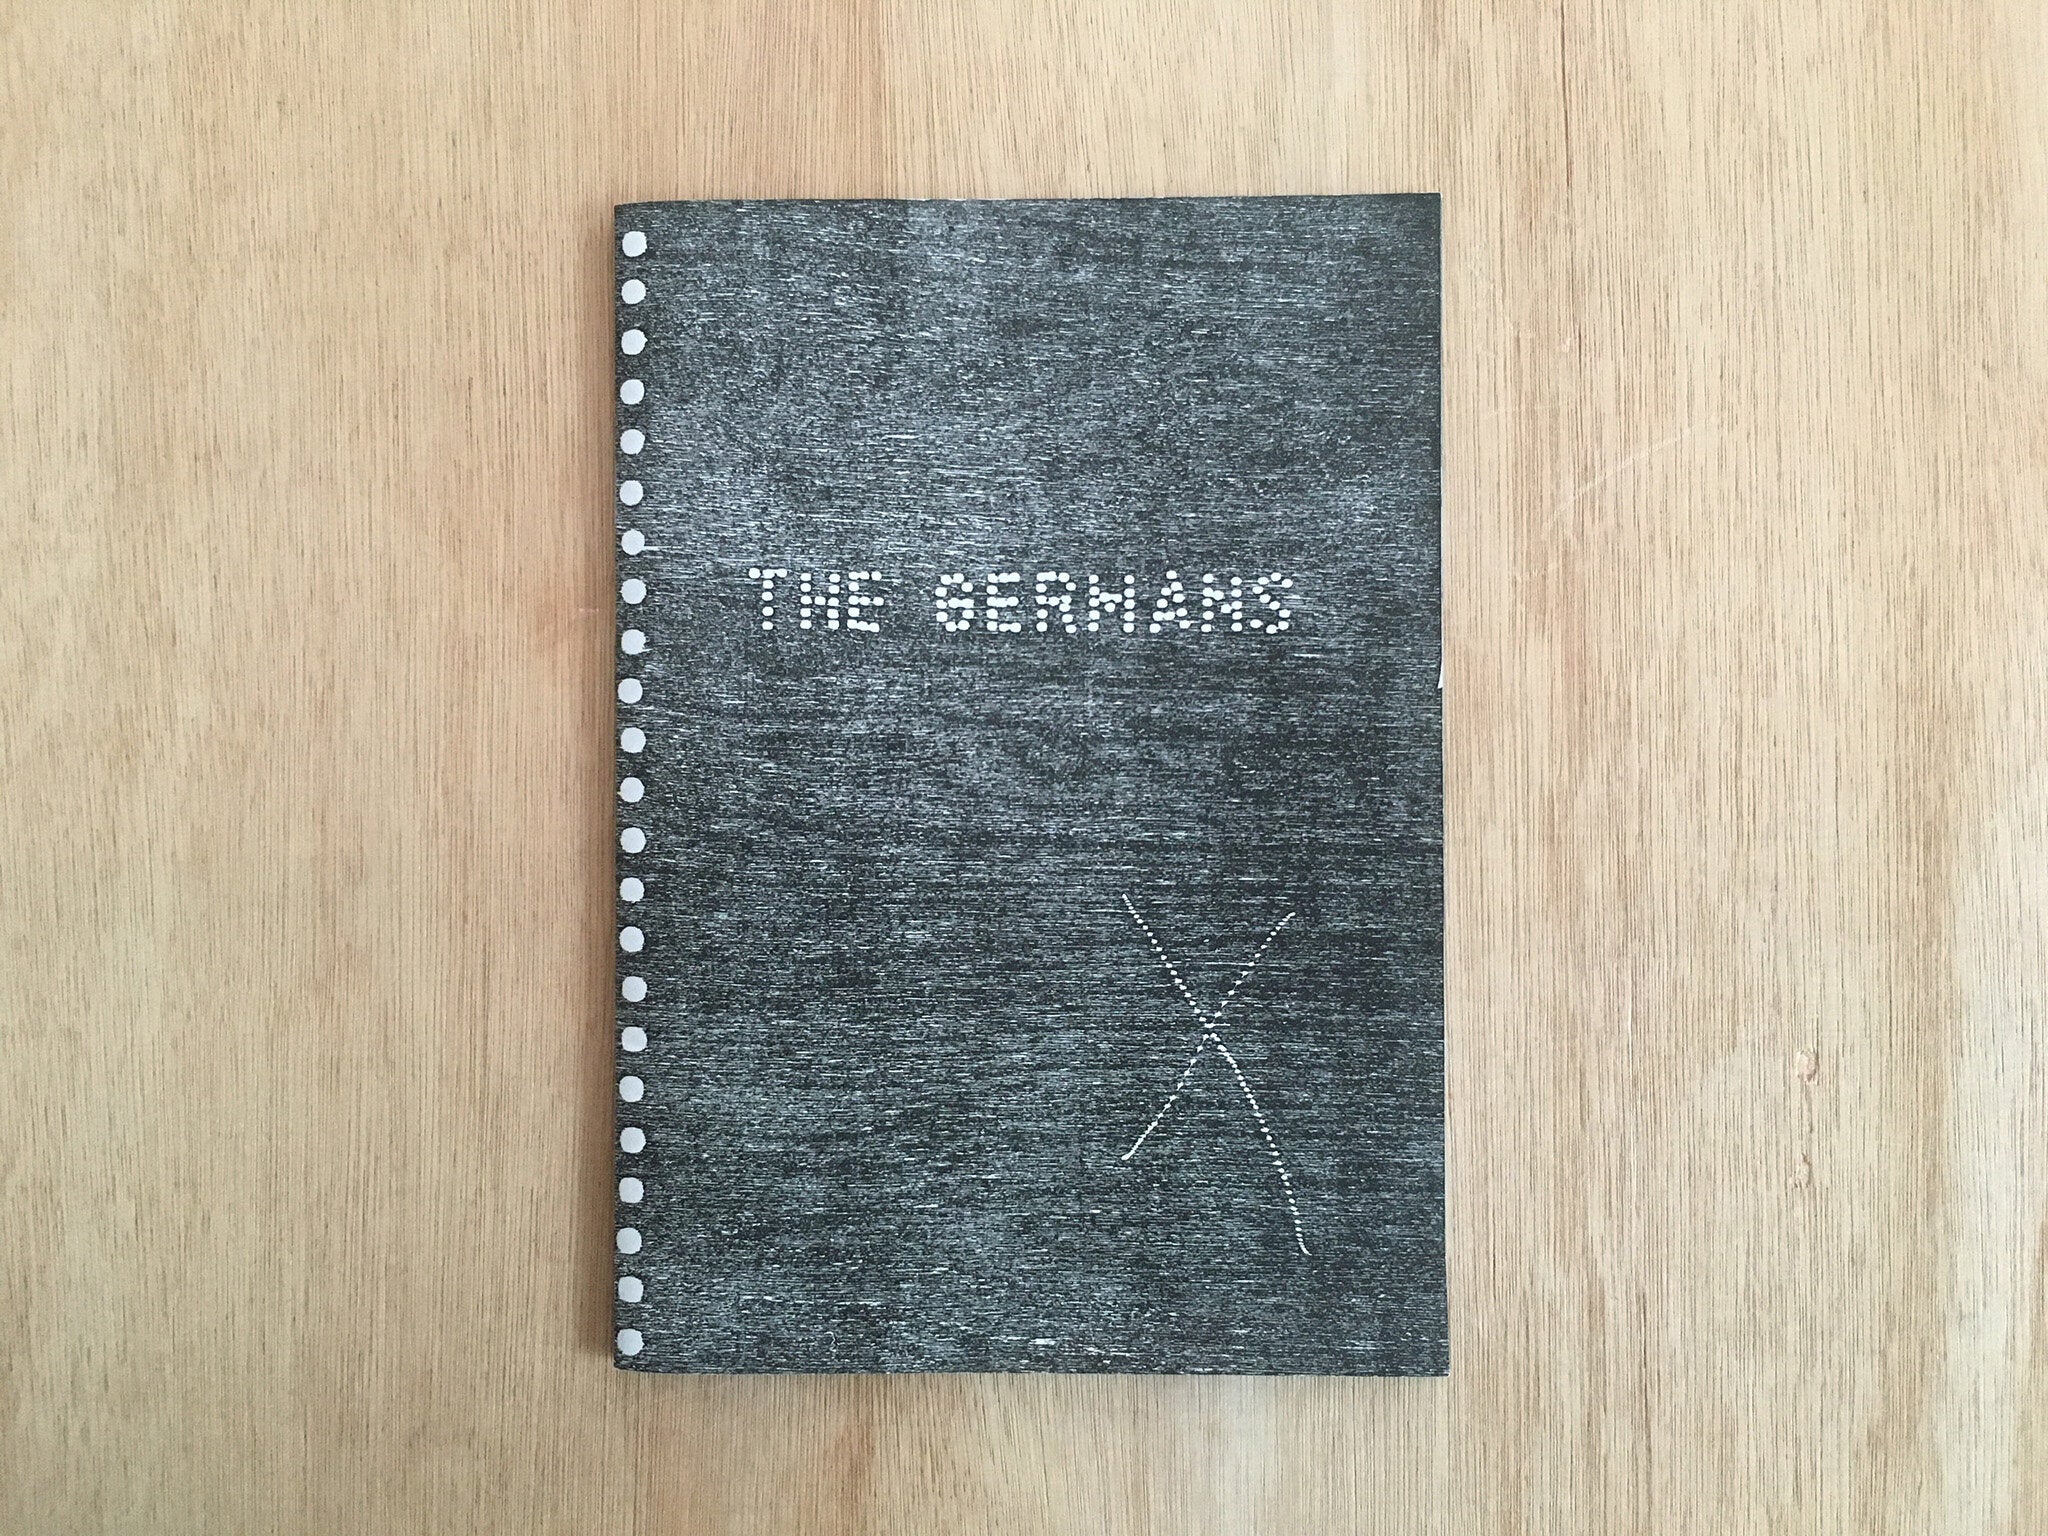 THE GERMANS  by Dogan Surek